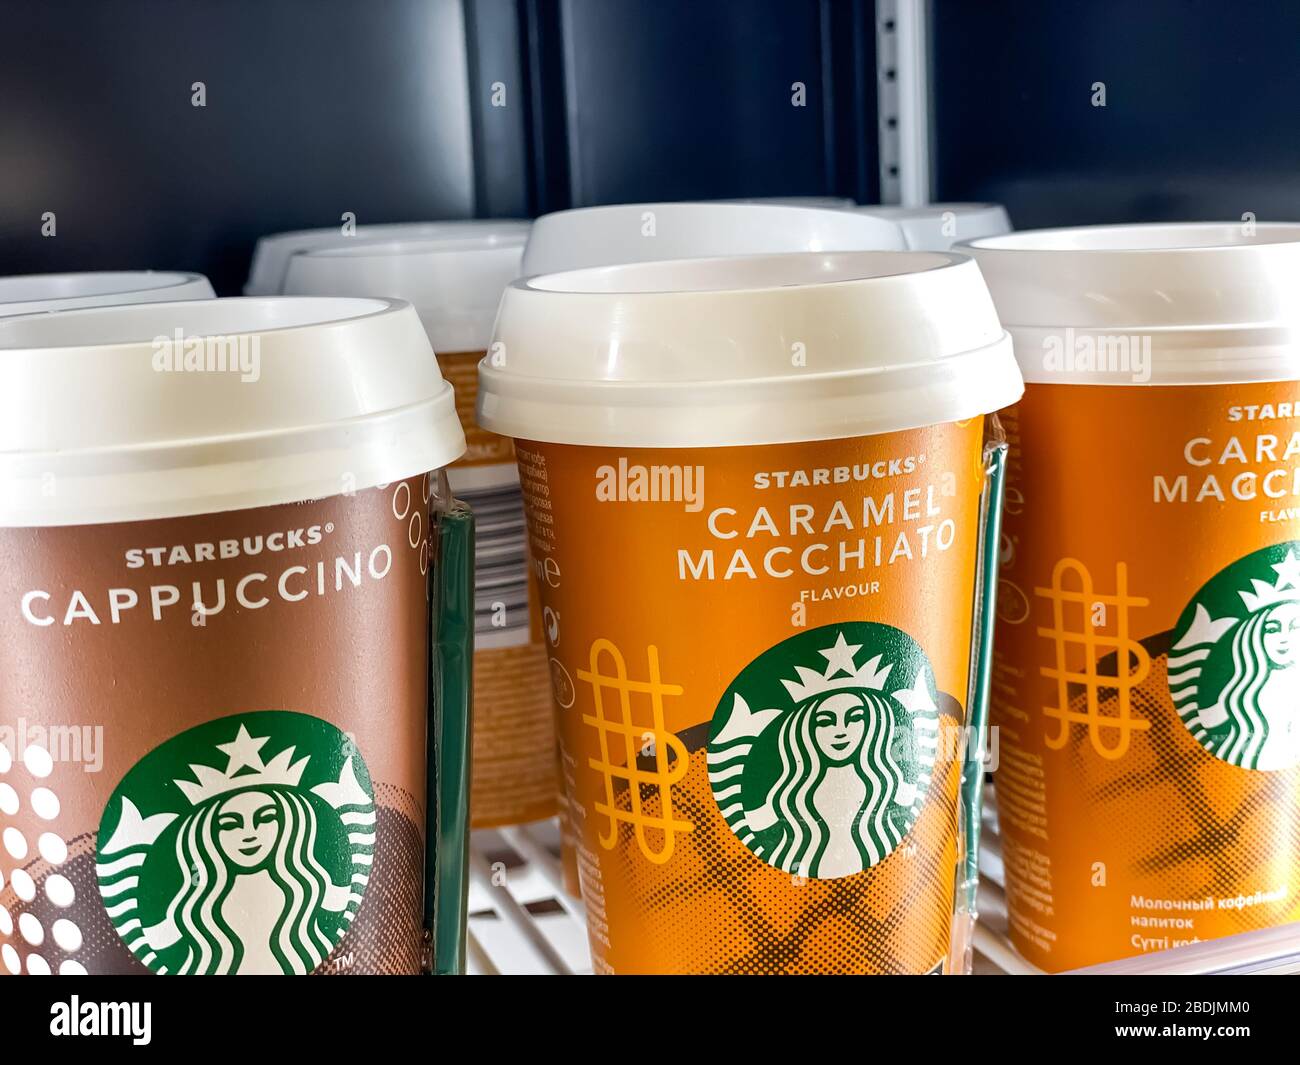 Hay una fila de tazas de café Starbucks listas para ir en un estante de la nevera del supermercado. Fotografía móvil. Moscú, Rusia - 06 de febrero de 2020 Foto de stock